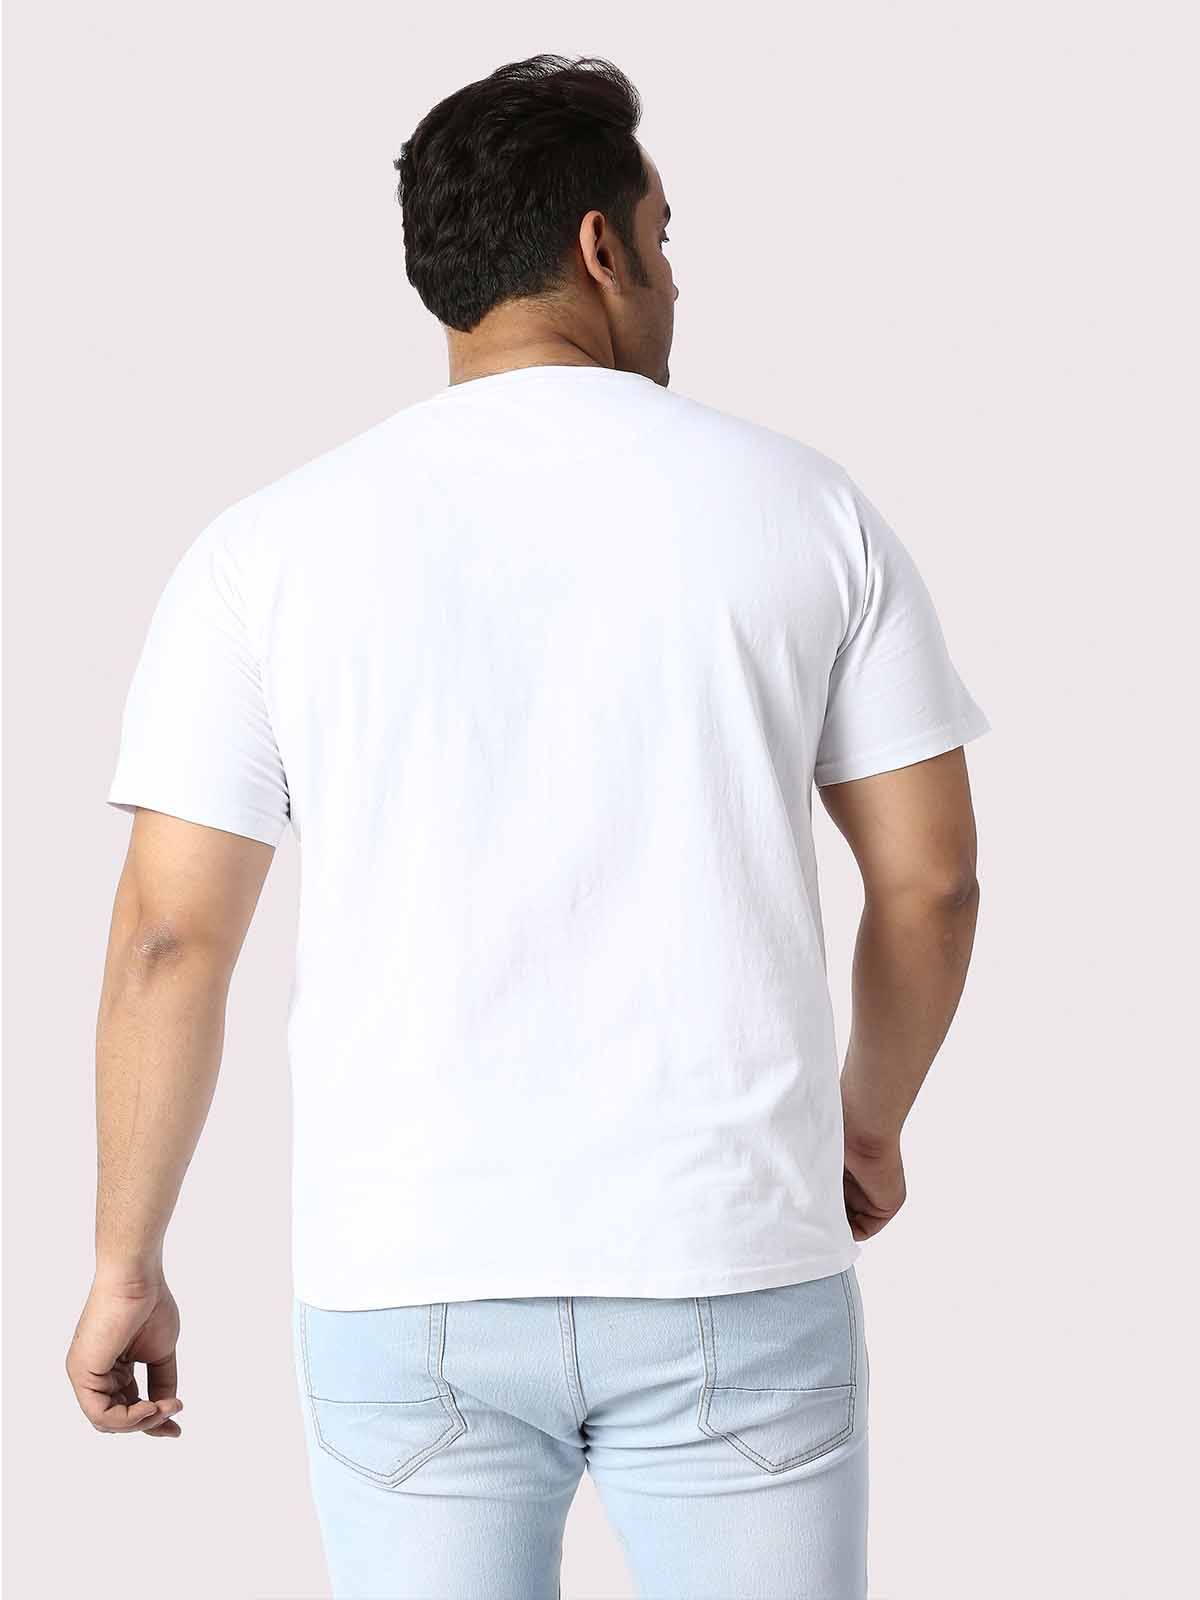 Men Plus Size White Mountain Adventure Printed Round Neck T-Shirt - Guniaa Fashions